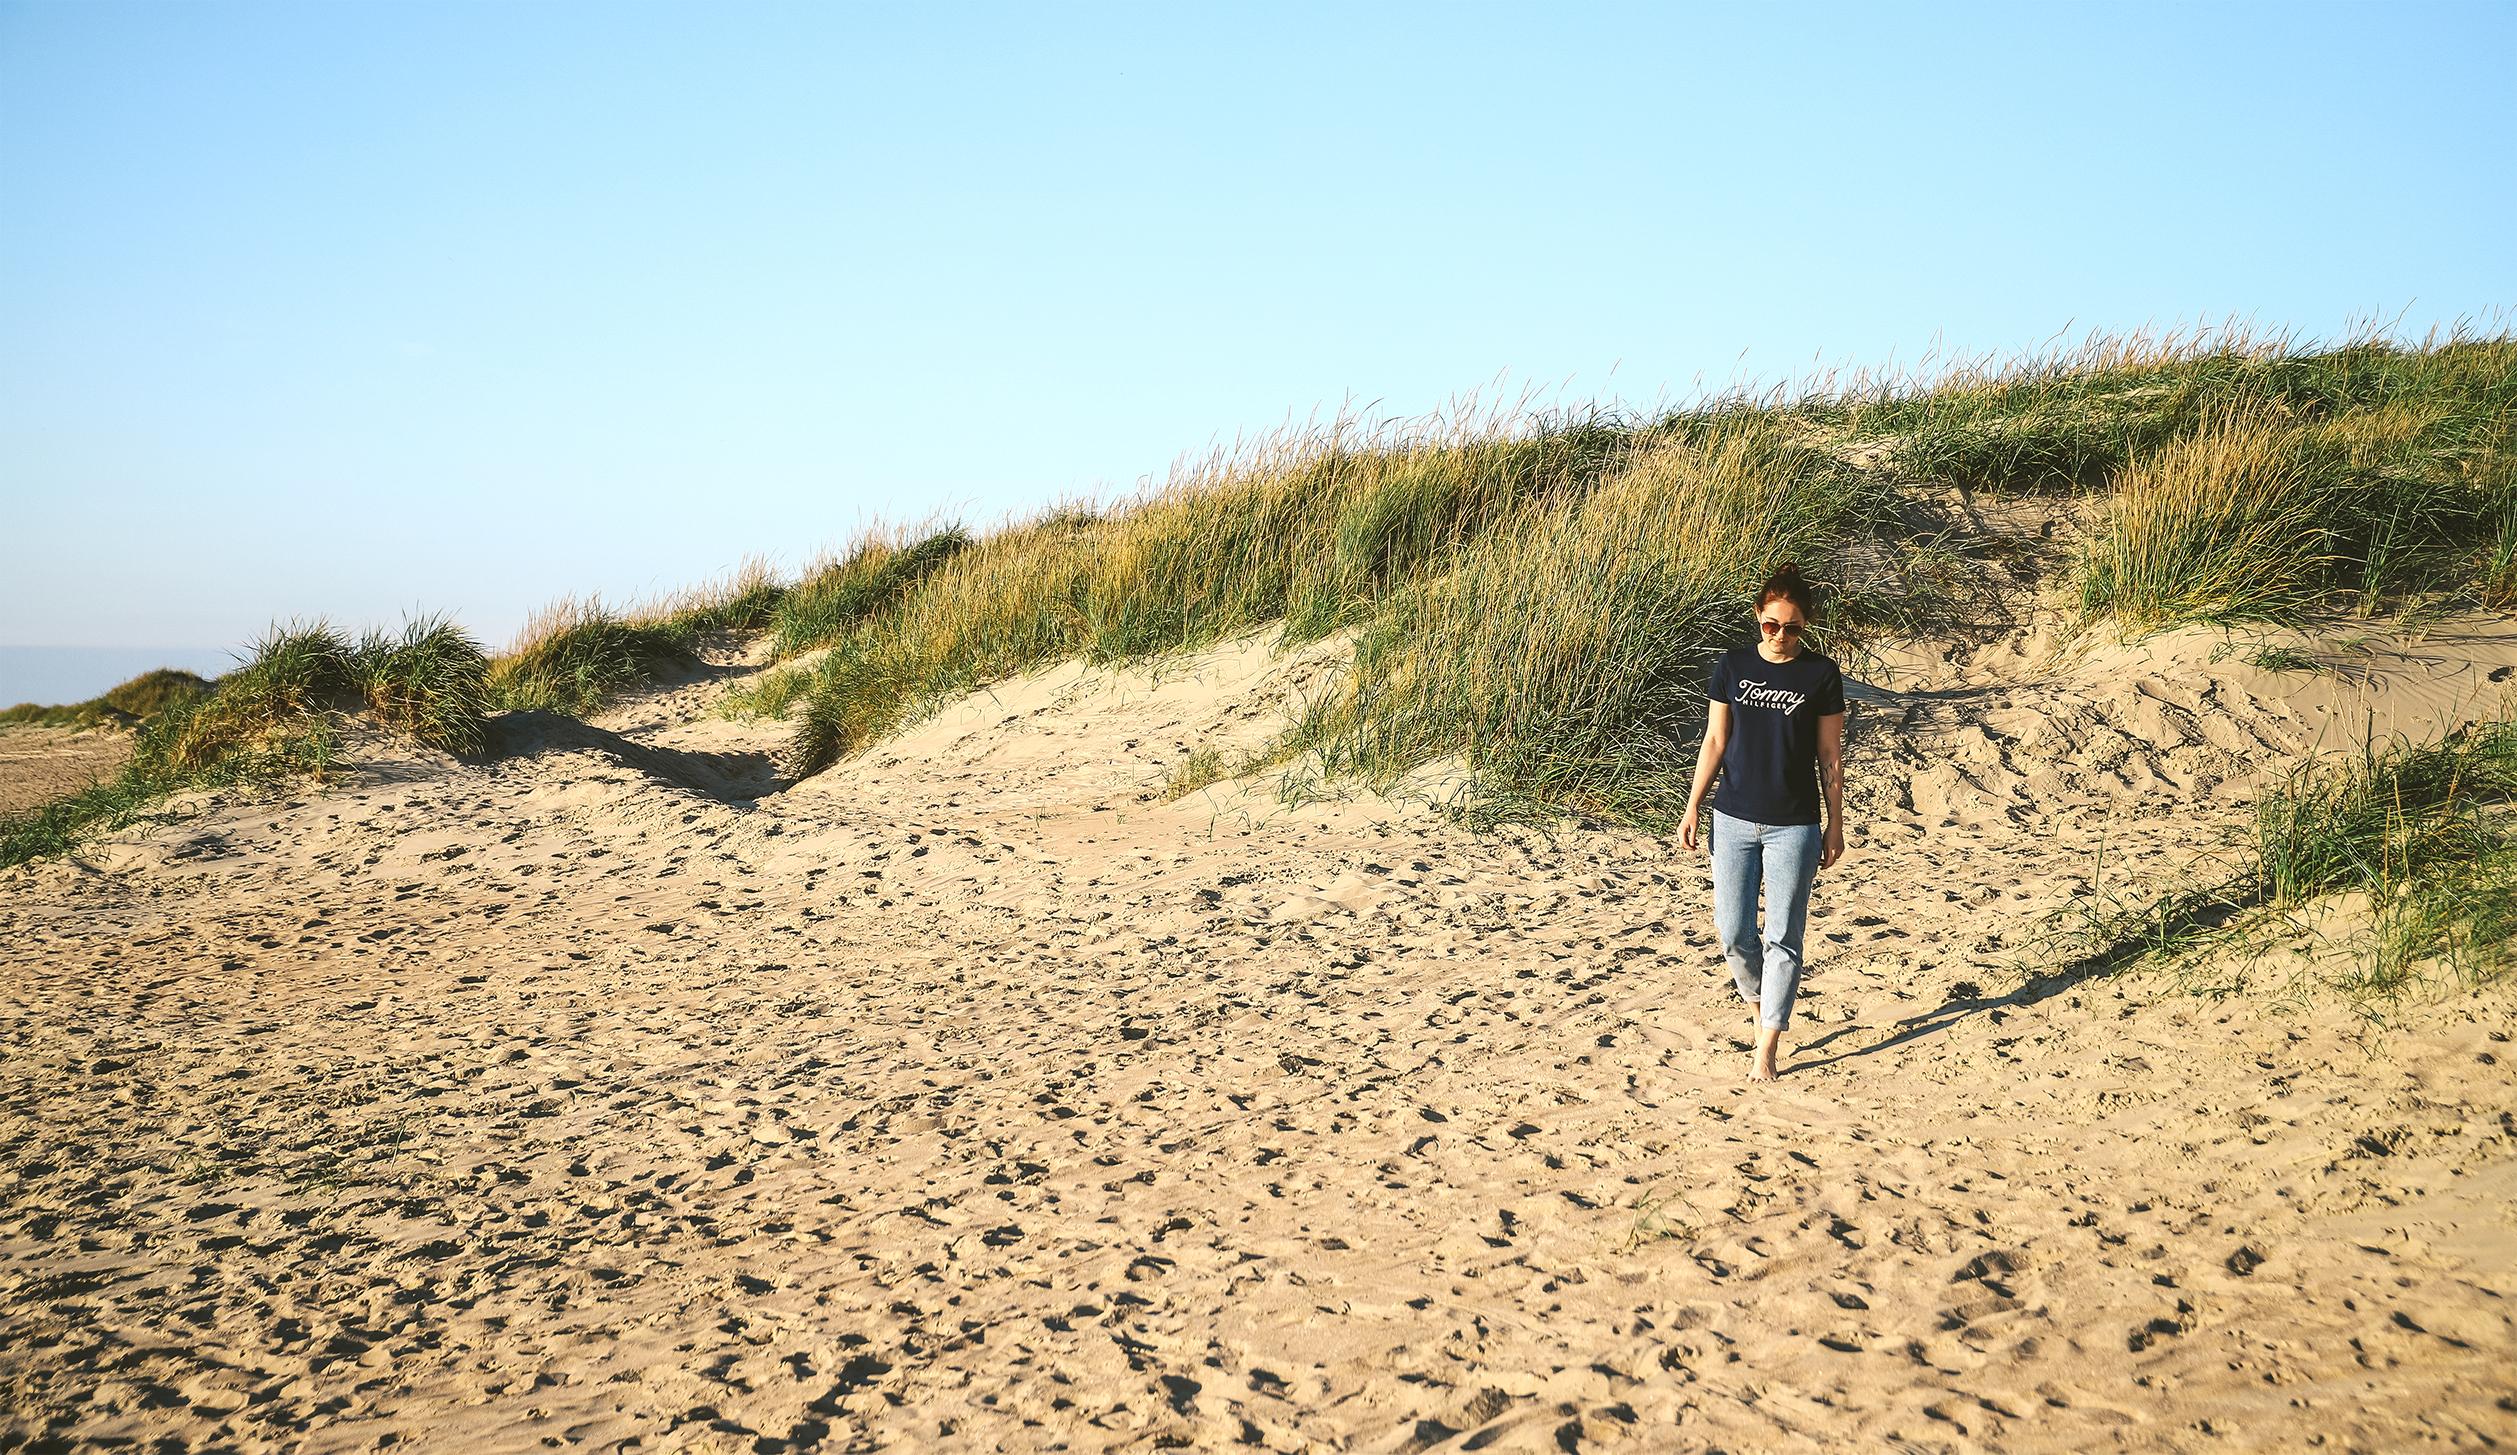 Wie wäre es mit einem Nachmittag am Strand und einem Spaziergang in den Dünen? Dein Campingplatz ist nur wenige Schritte entfernt. Copyright: Marielle Janotta